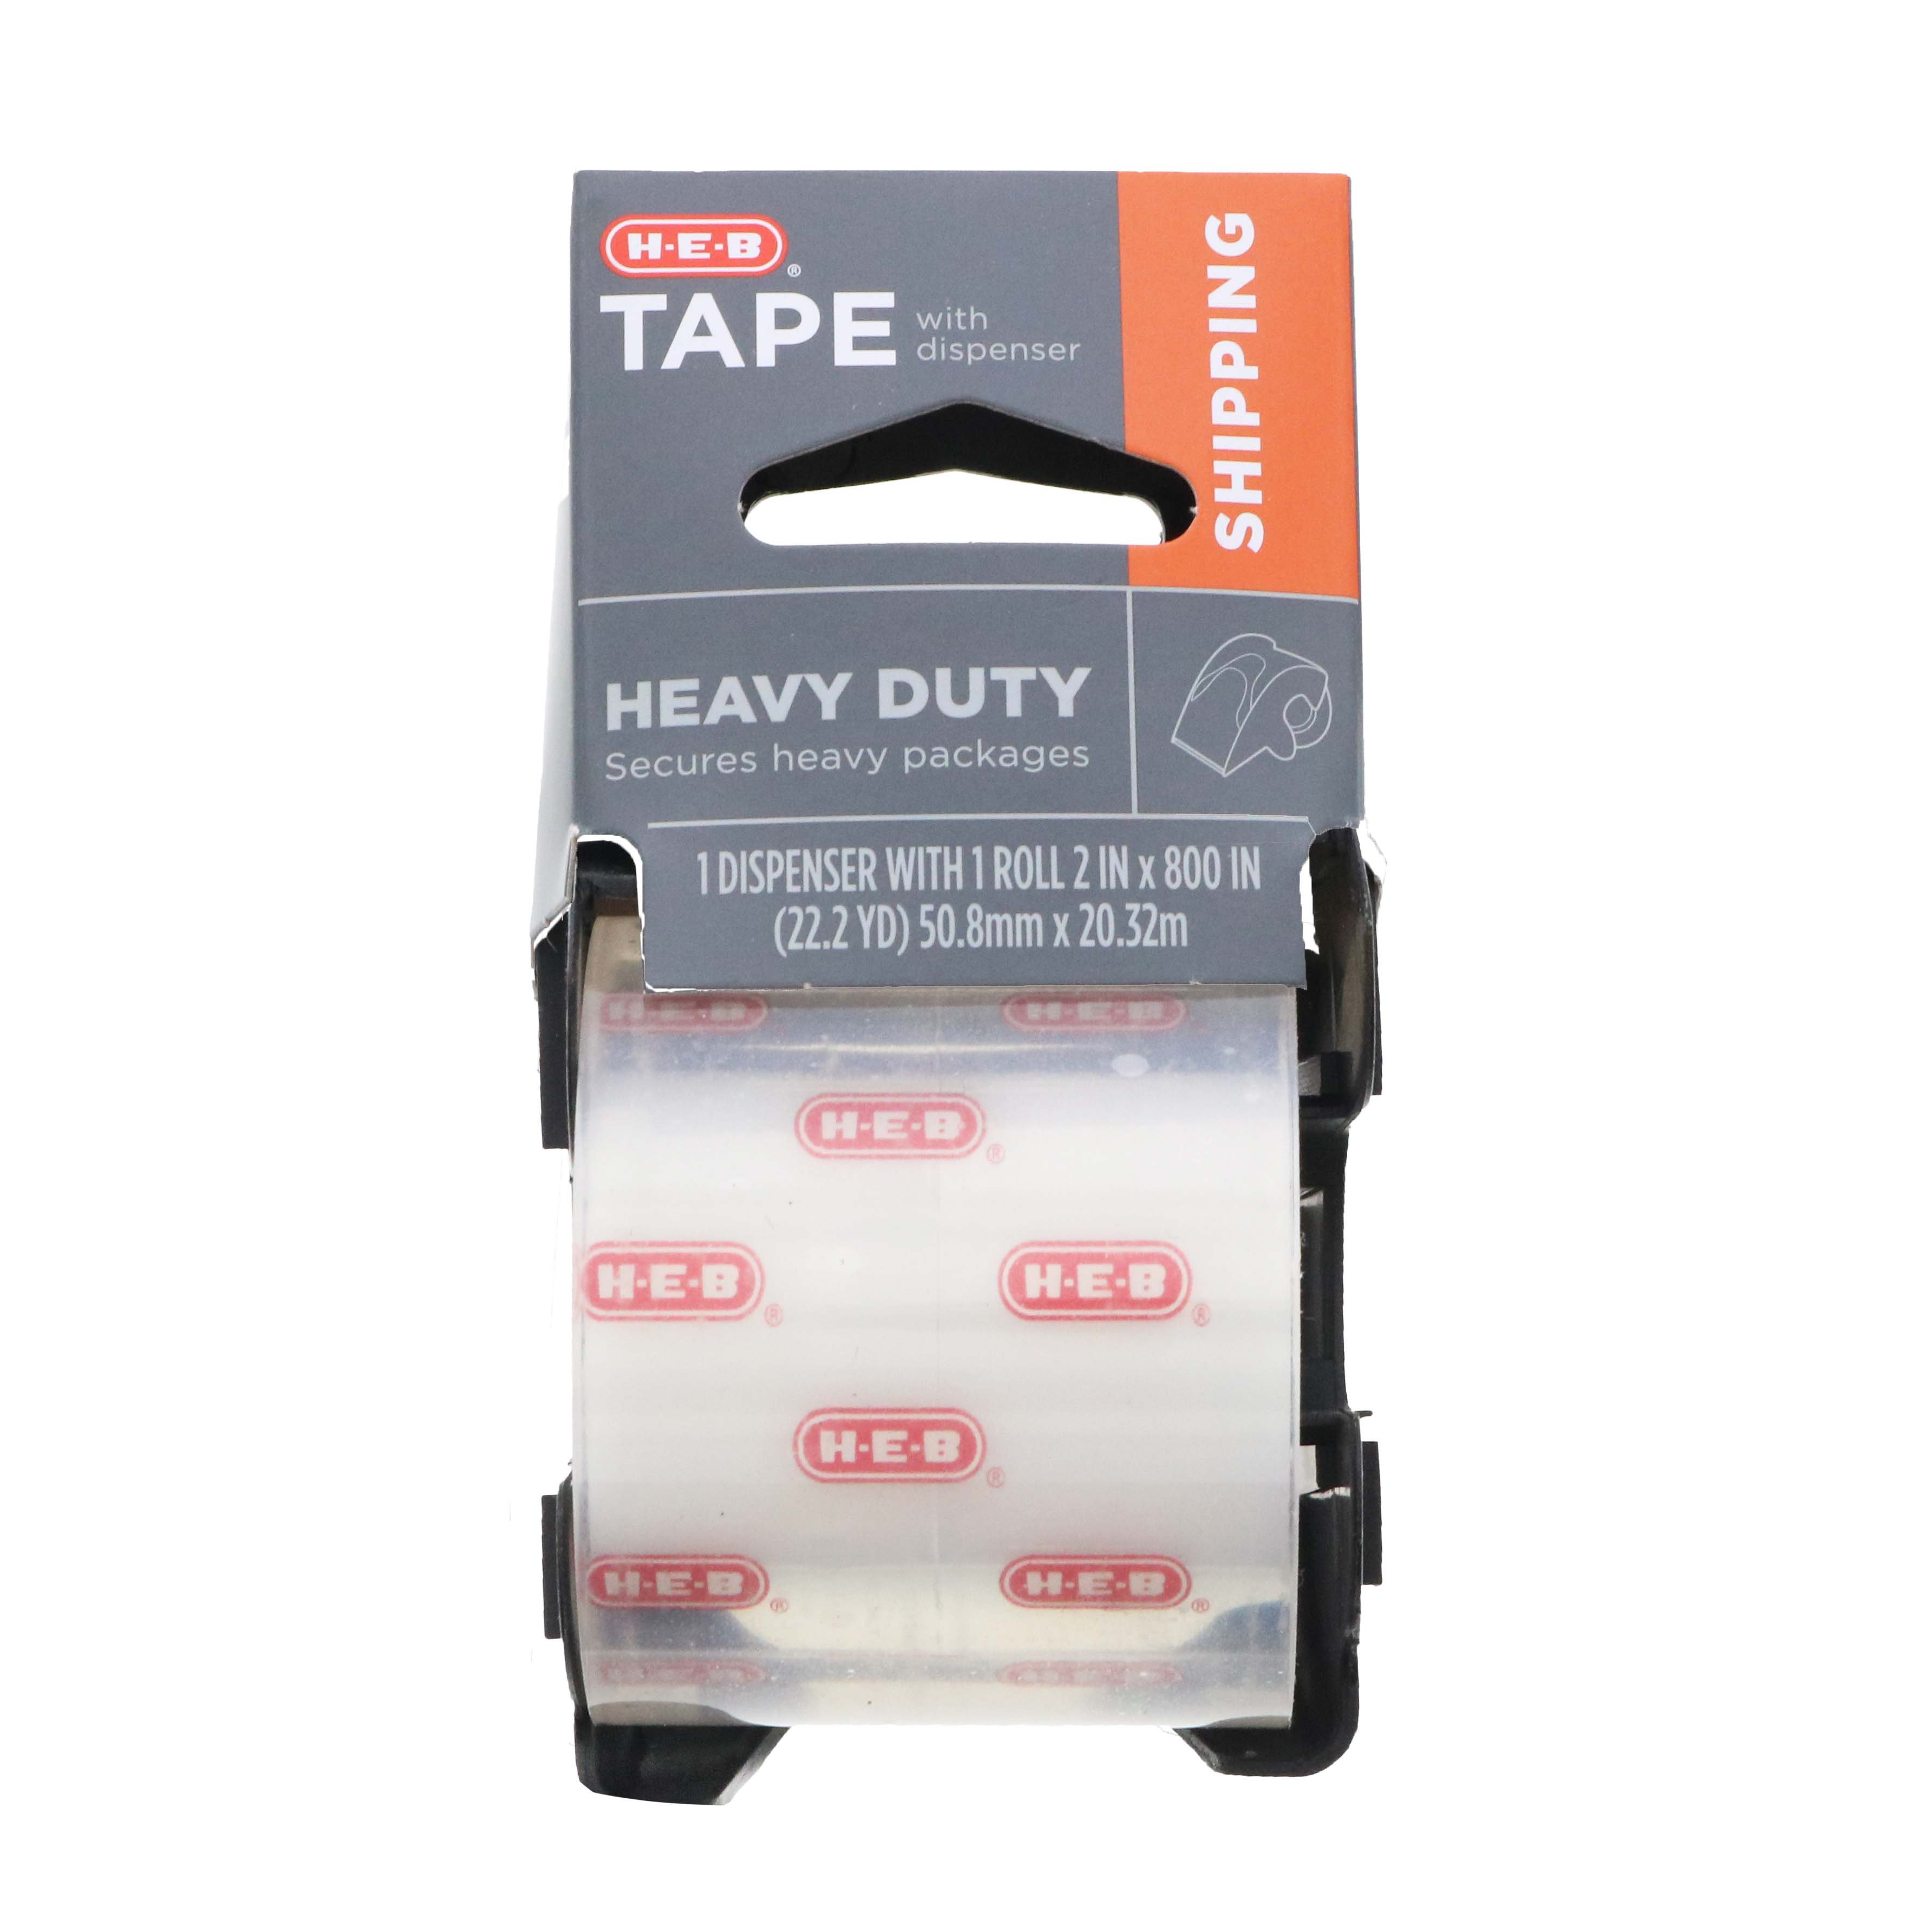 Uoffice Heavy Duty 2 Tape Dispenser